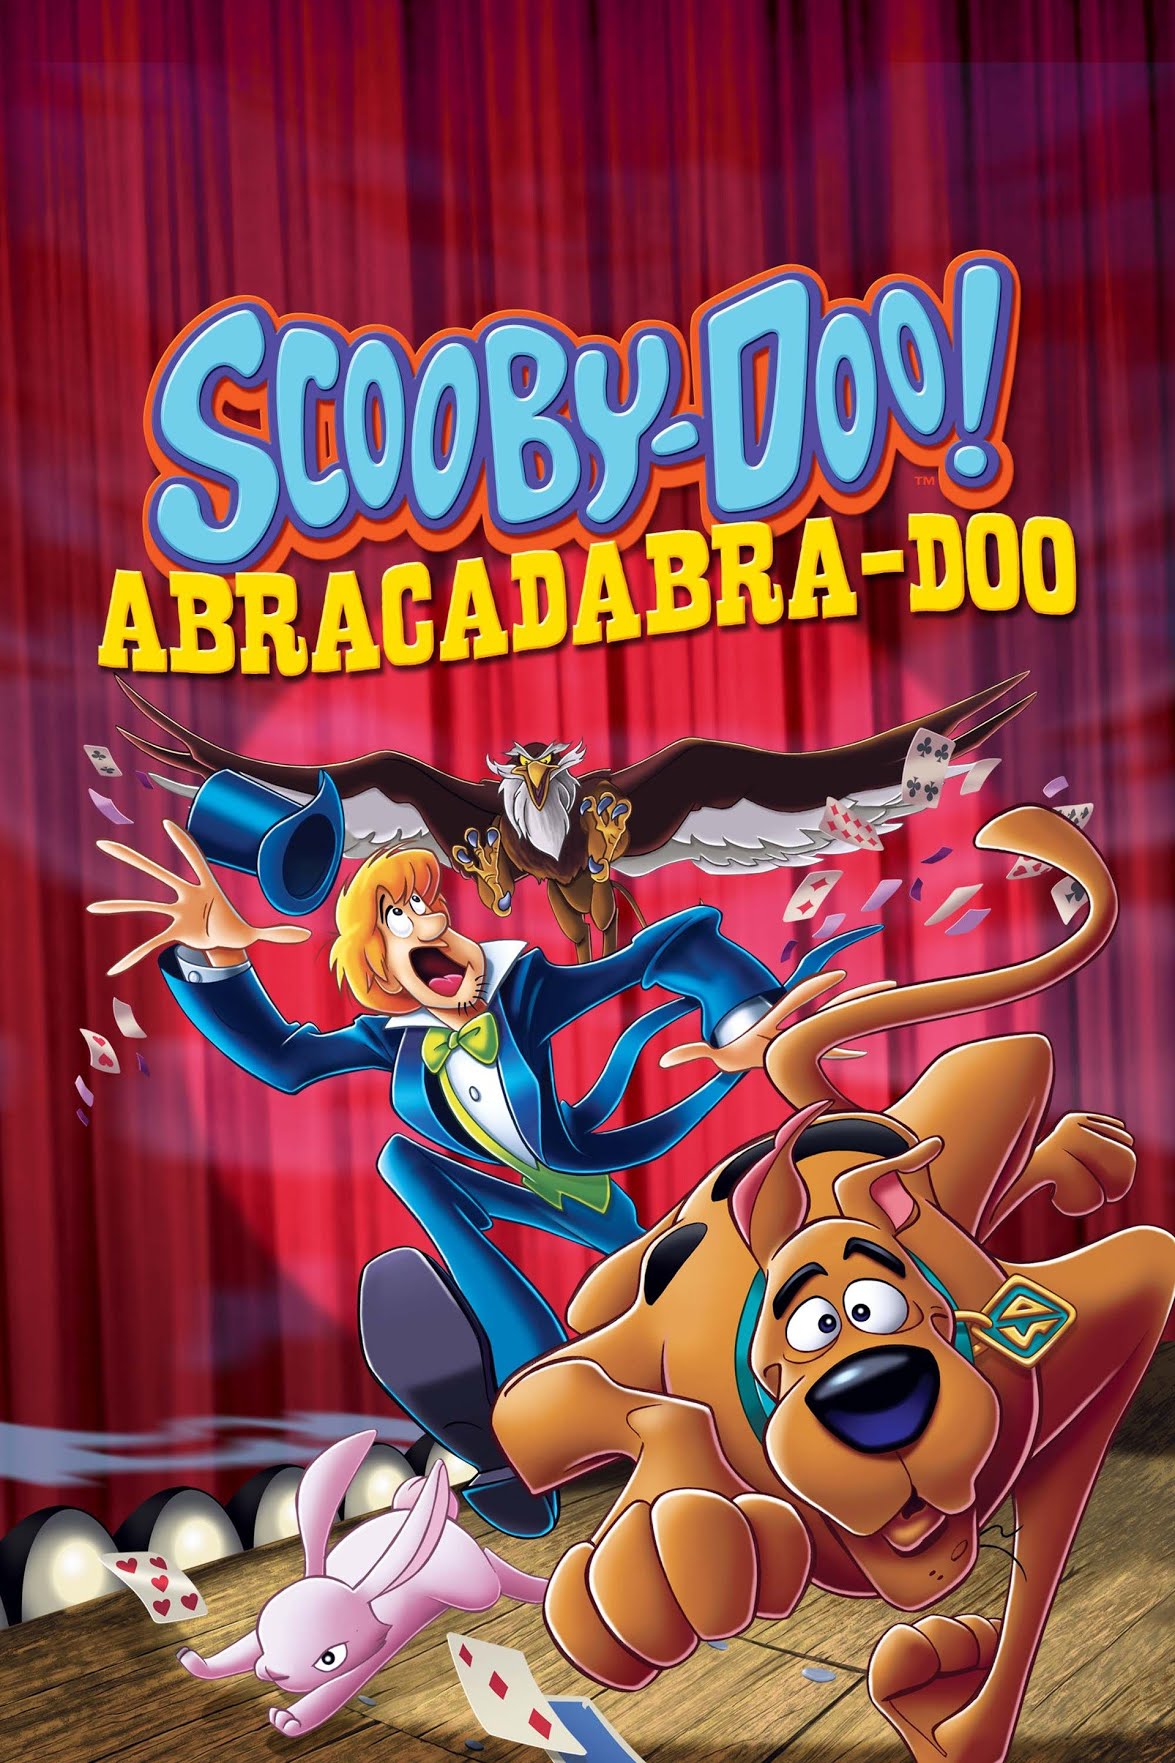 Scooby-Doo! Abracadabra-Doo (2009) สคูบี้ดู กับโรงเรียนคาถามหาสนุก พากย์ไทย